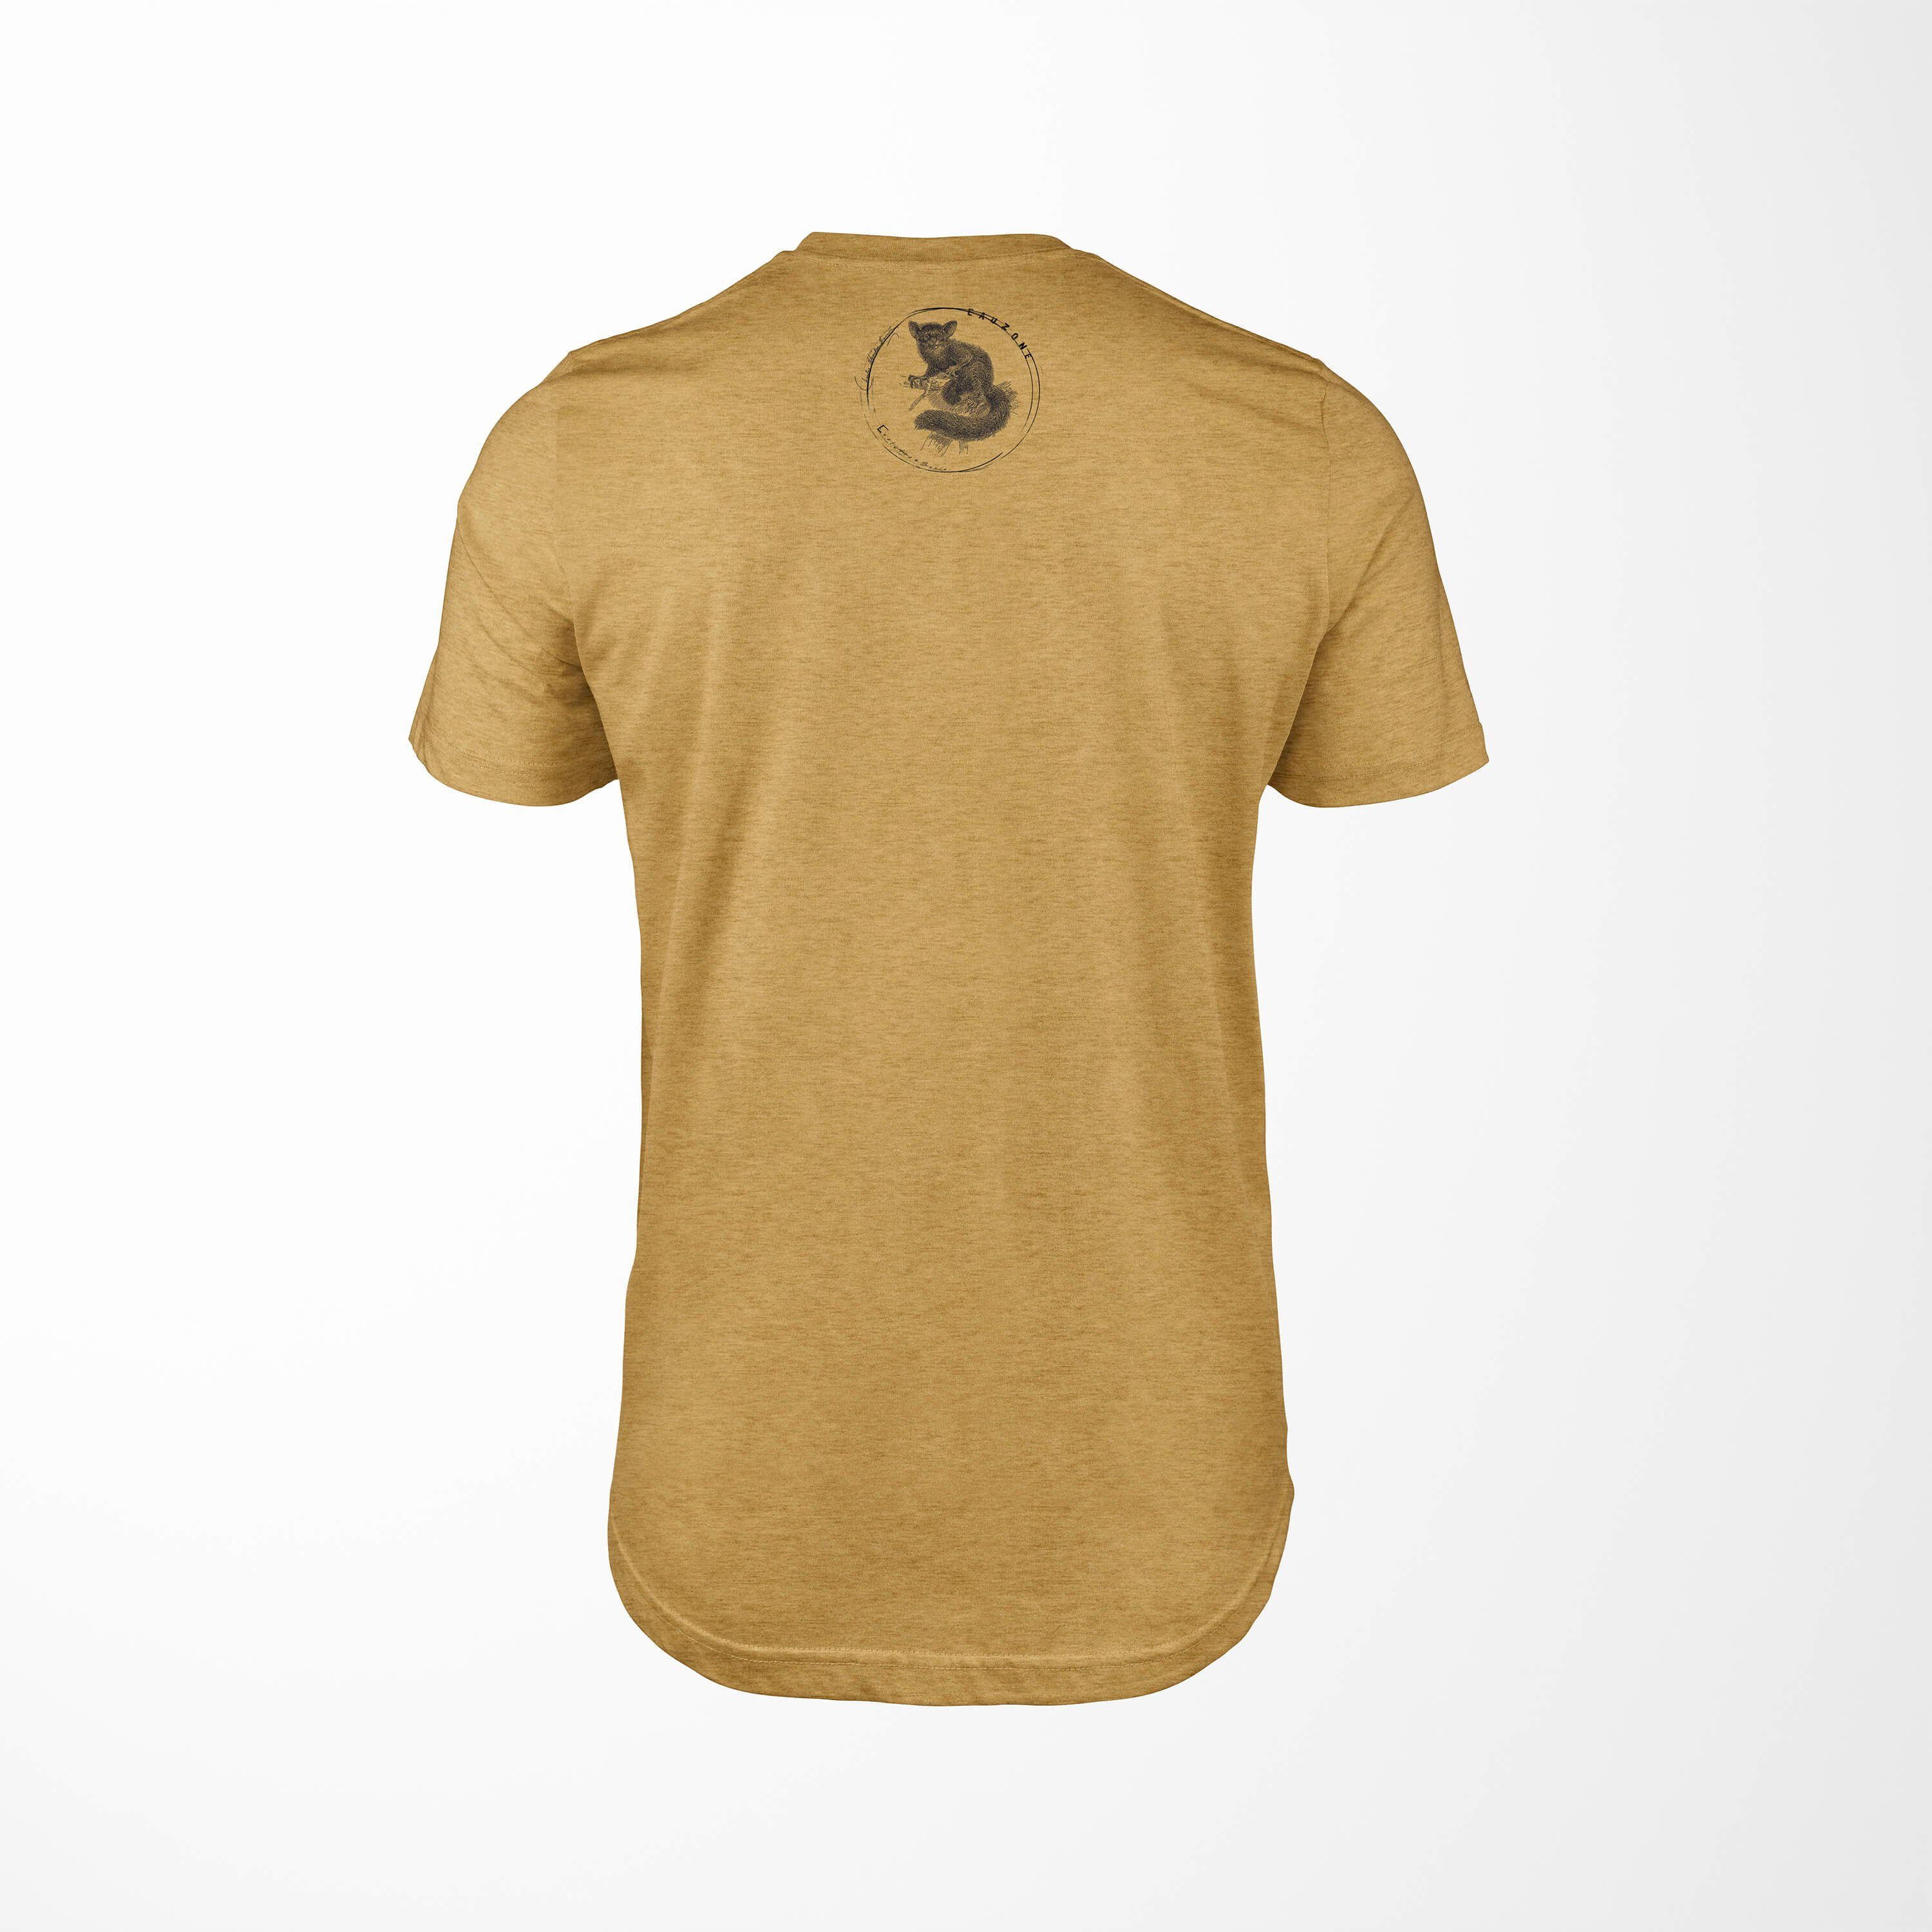 Herren Antique Fingertier T-Shirt Sinus Evolution Art Gold T-Shirt